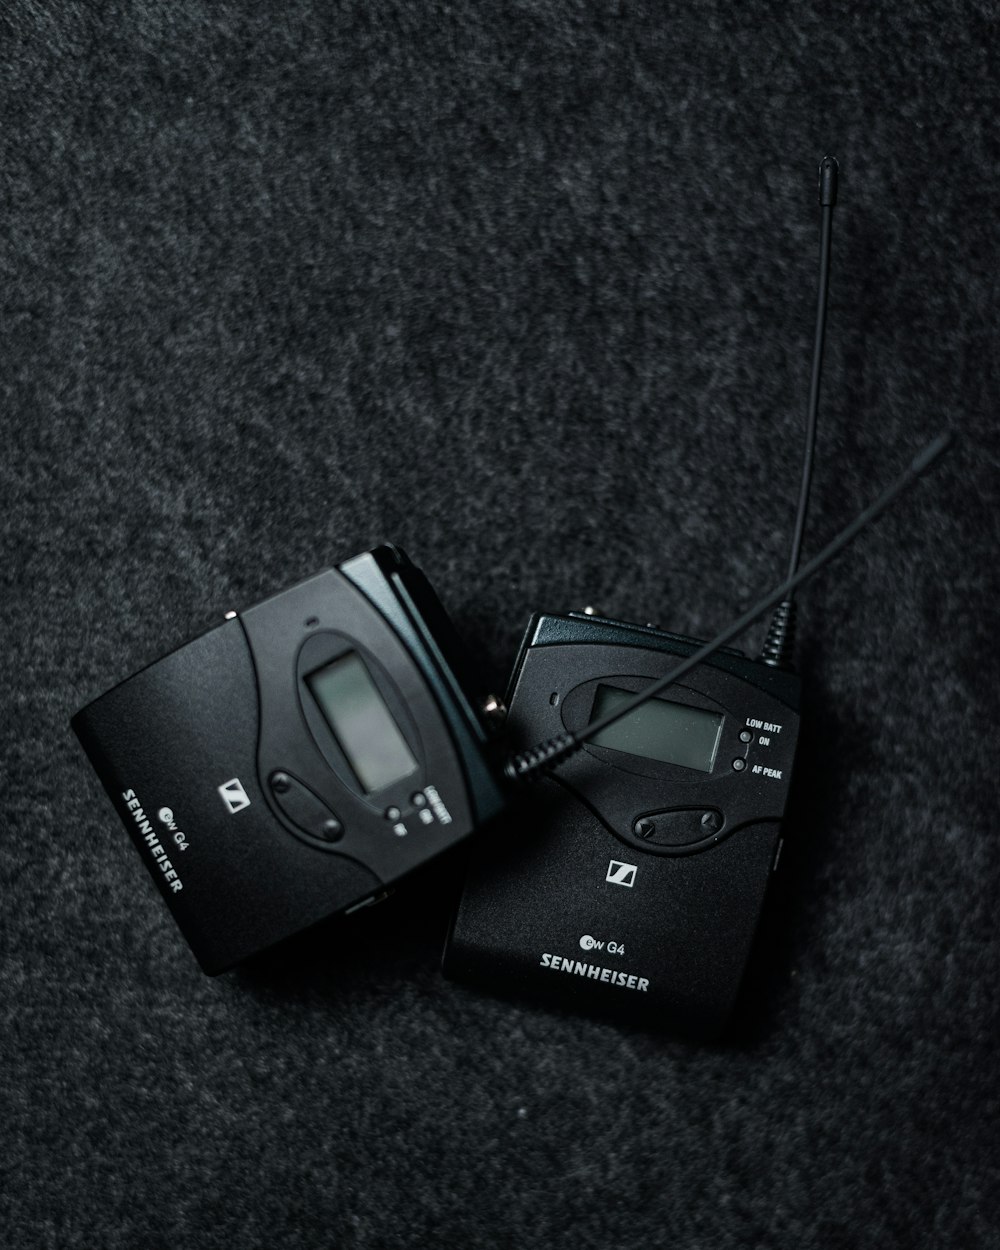 Appareil photo numérique Sony noir sur textile noir